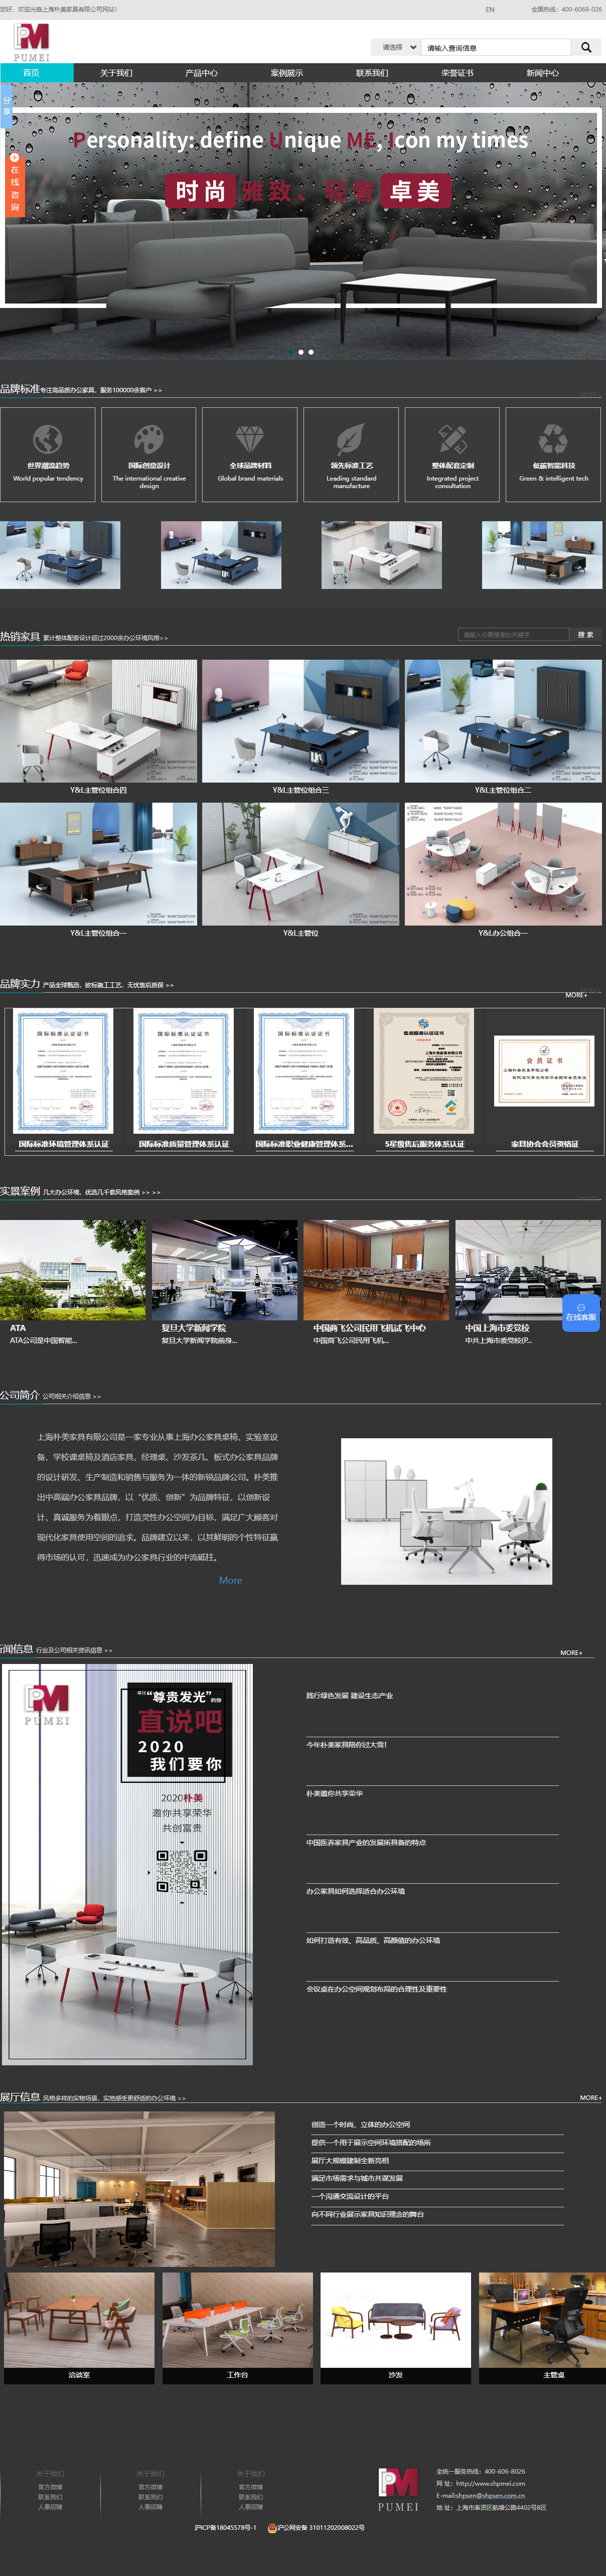 上海朴美家具有限公司网站案例